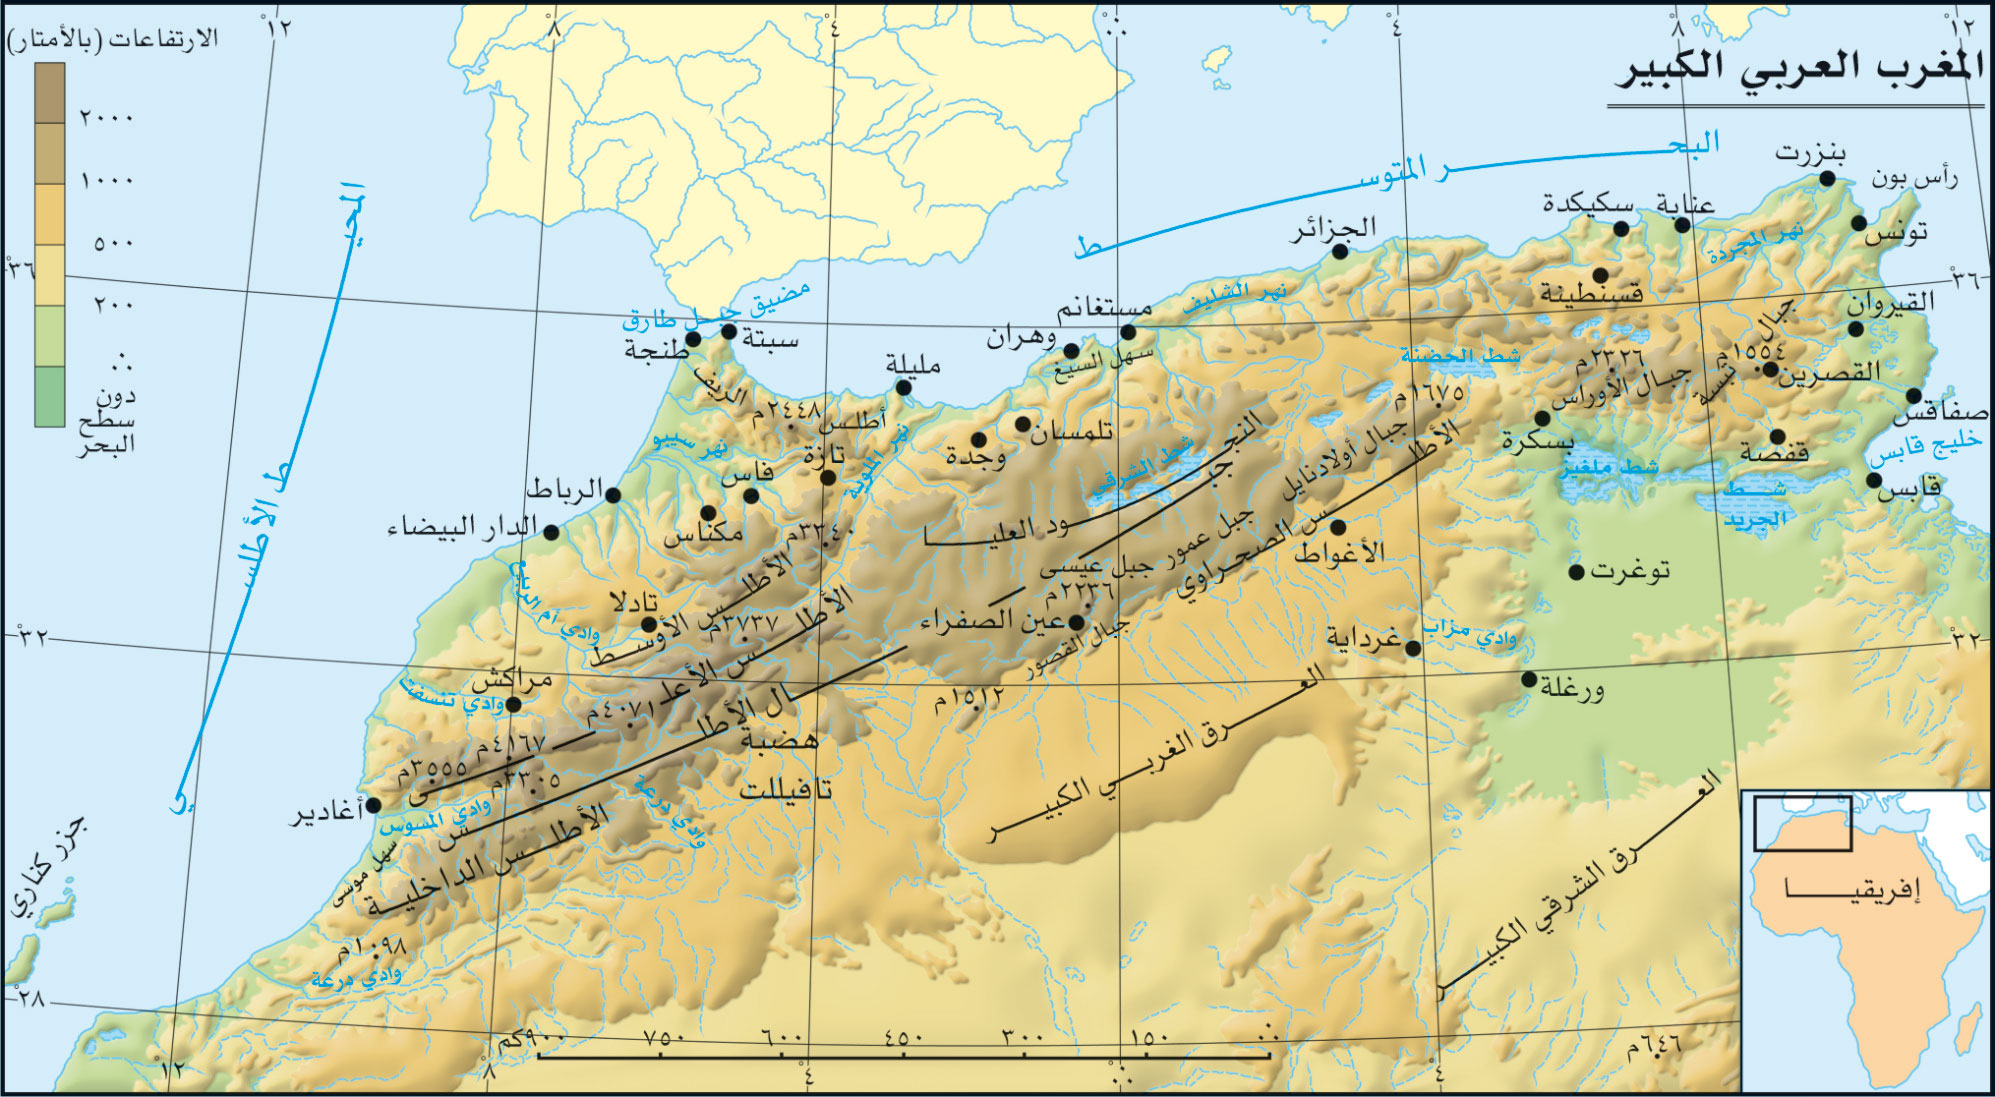 الموسوعة العربية | المغرب العربي الكبير (جغرافيا)